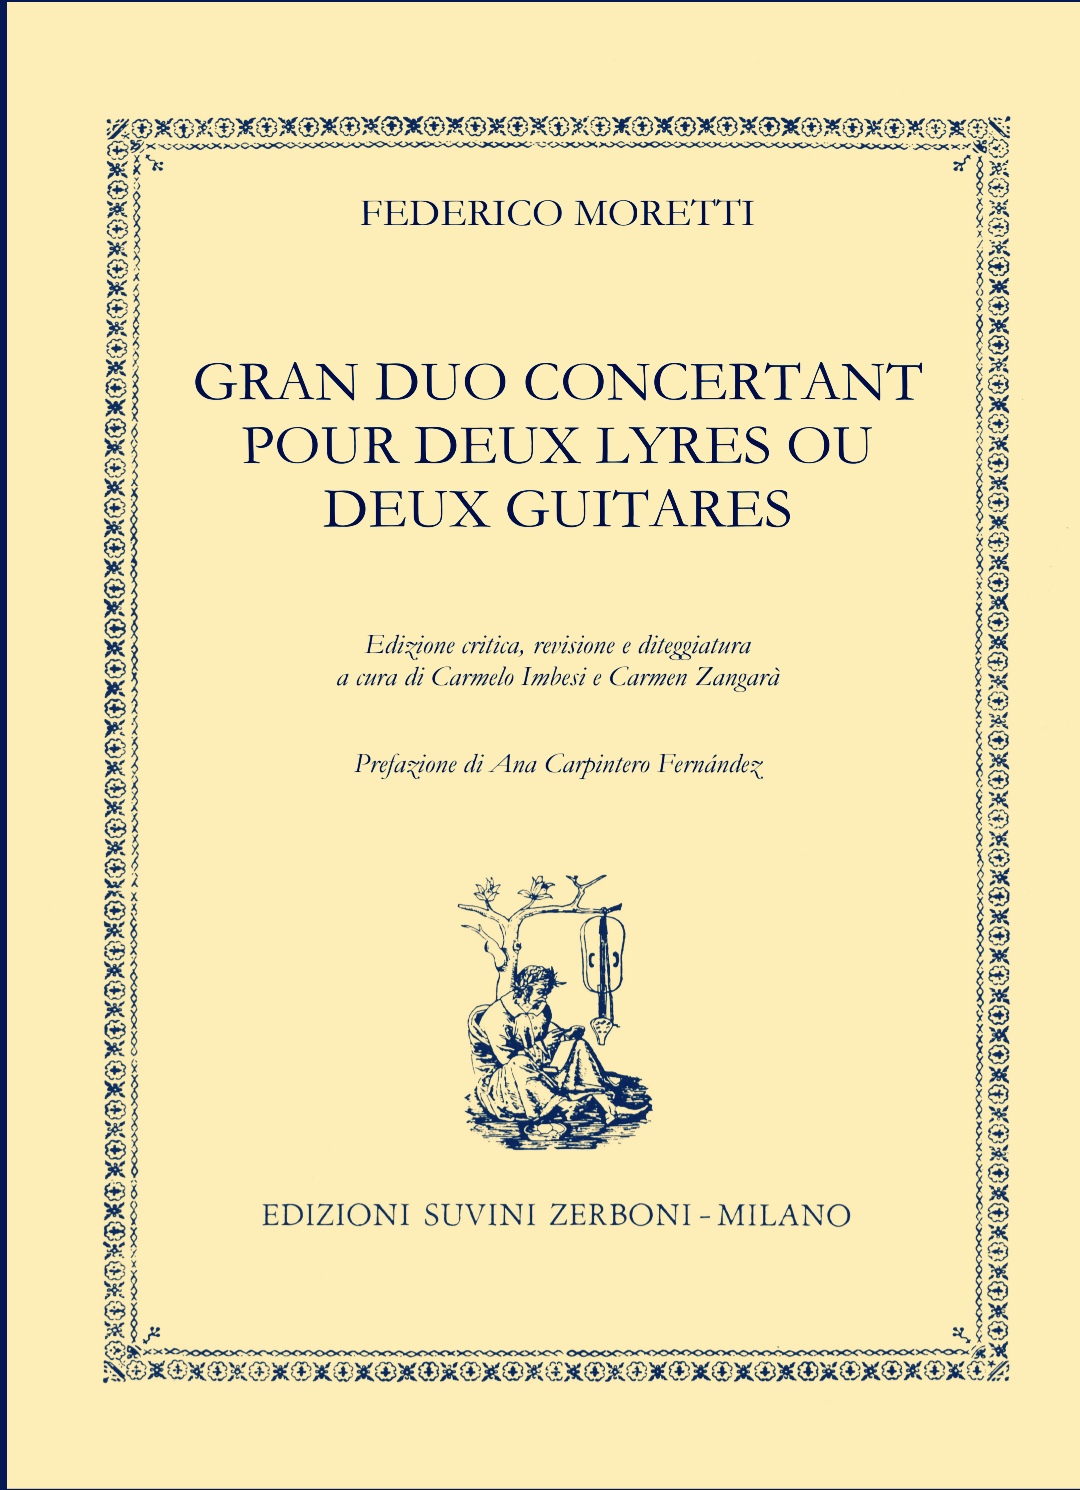 Gran Duo Concertant pour deux Lyres ou deux Guitares | Federico Moretti